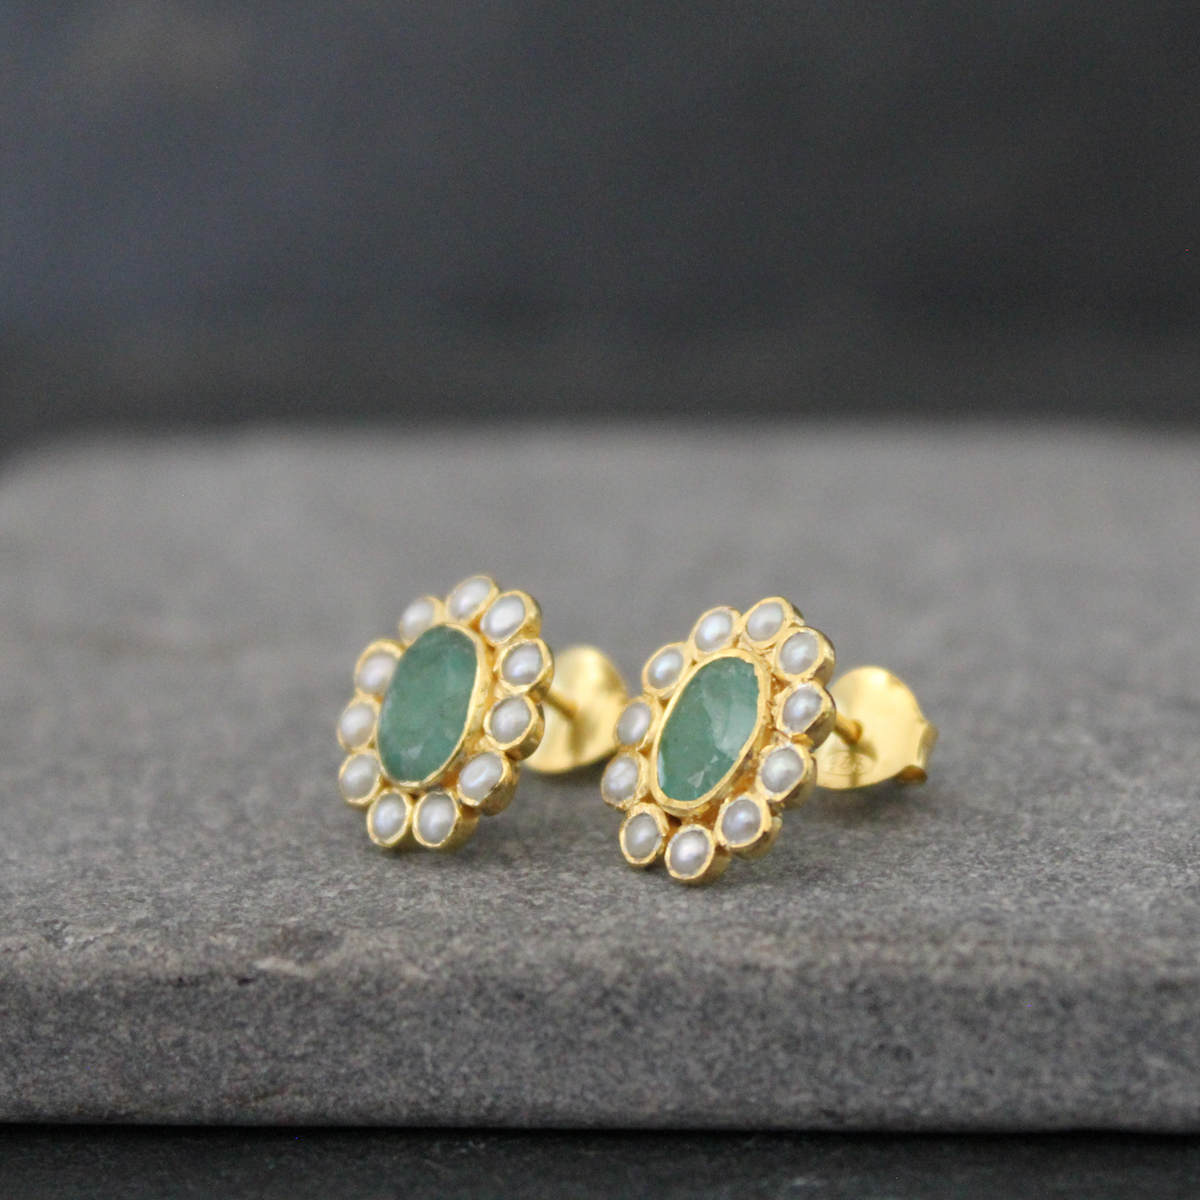 Emerald, Pearl and Gold Vermeil Stud Earrings - Beyond Biasa